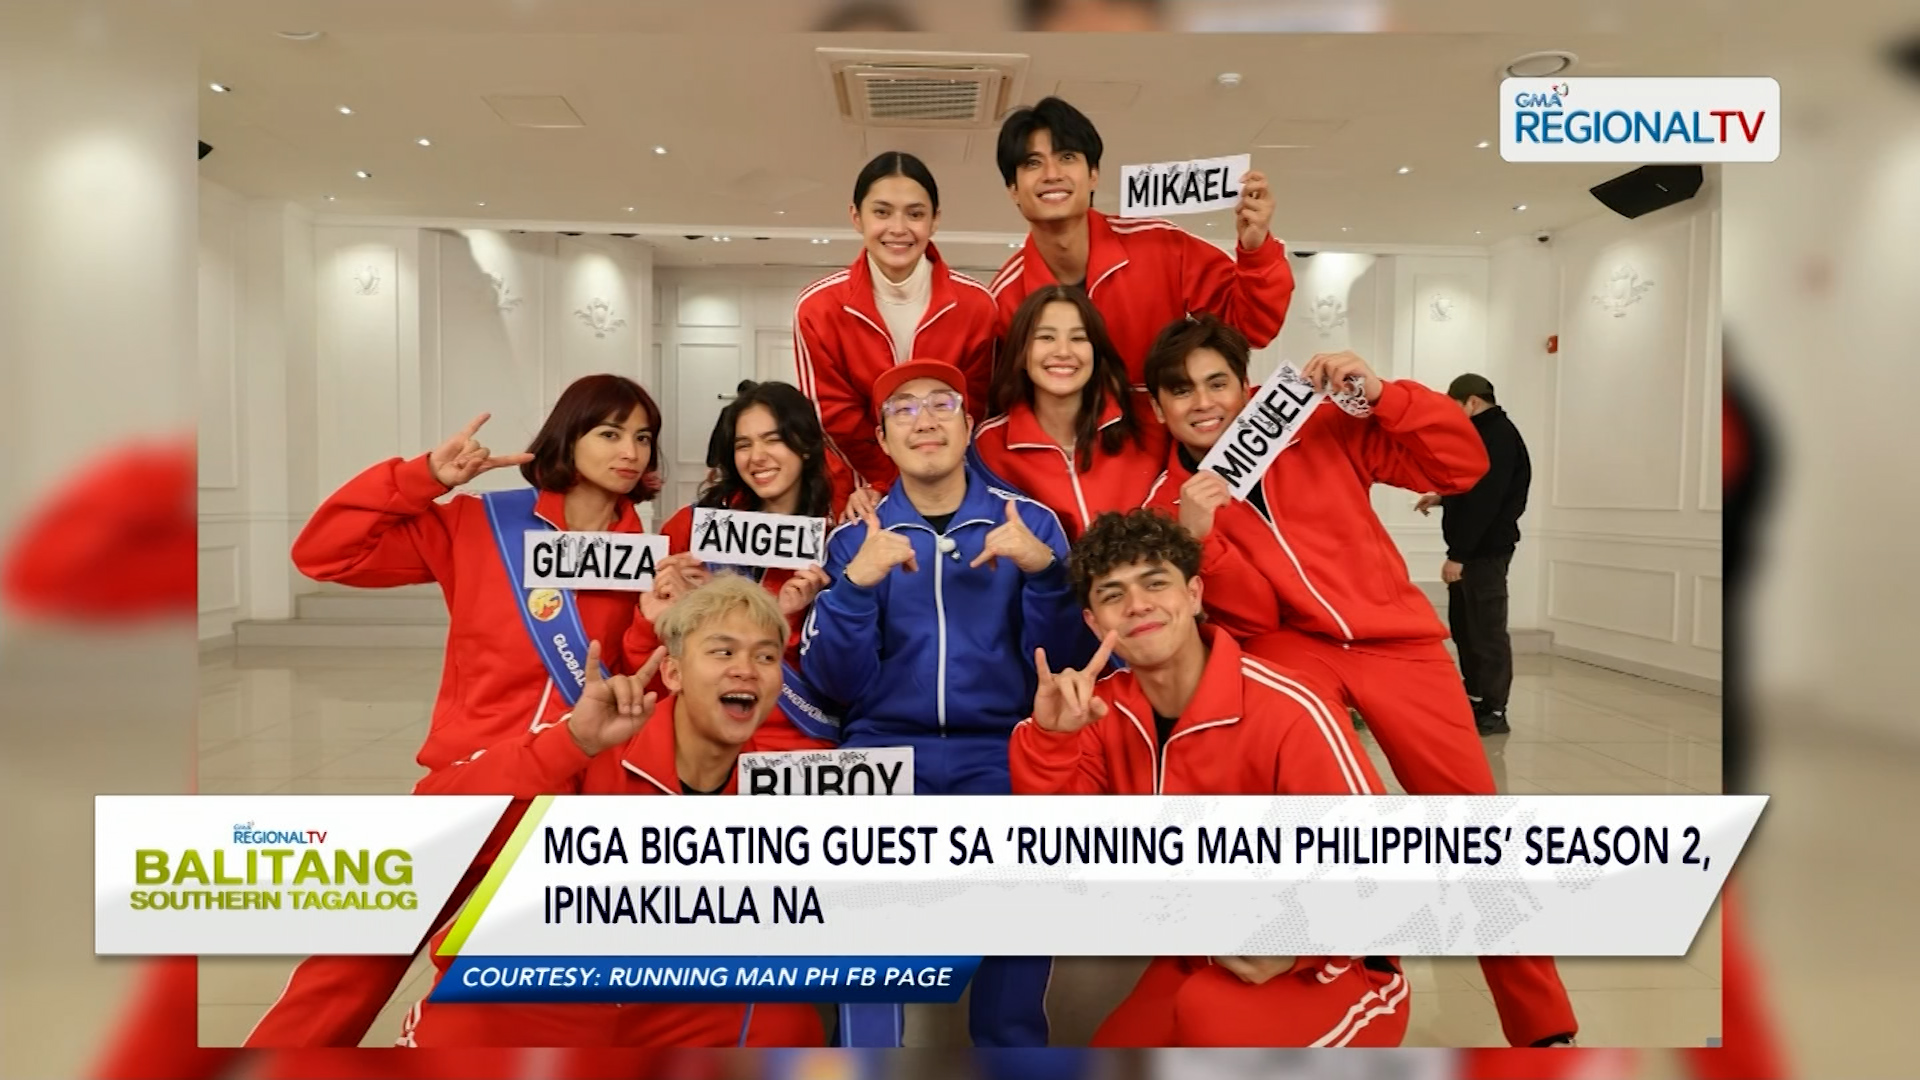 Mga bigating guest sa ‘Running Man Philippines’ season 2, ipinakilala na